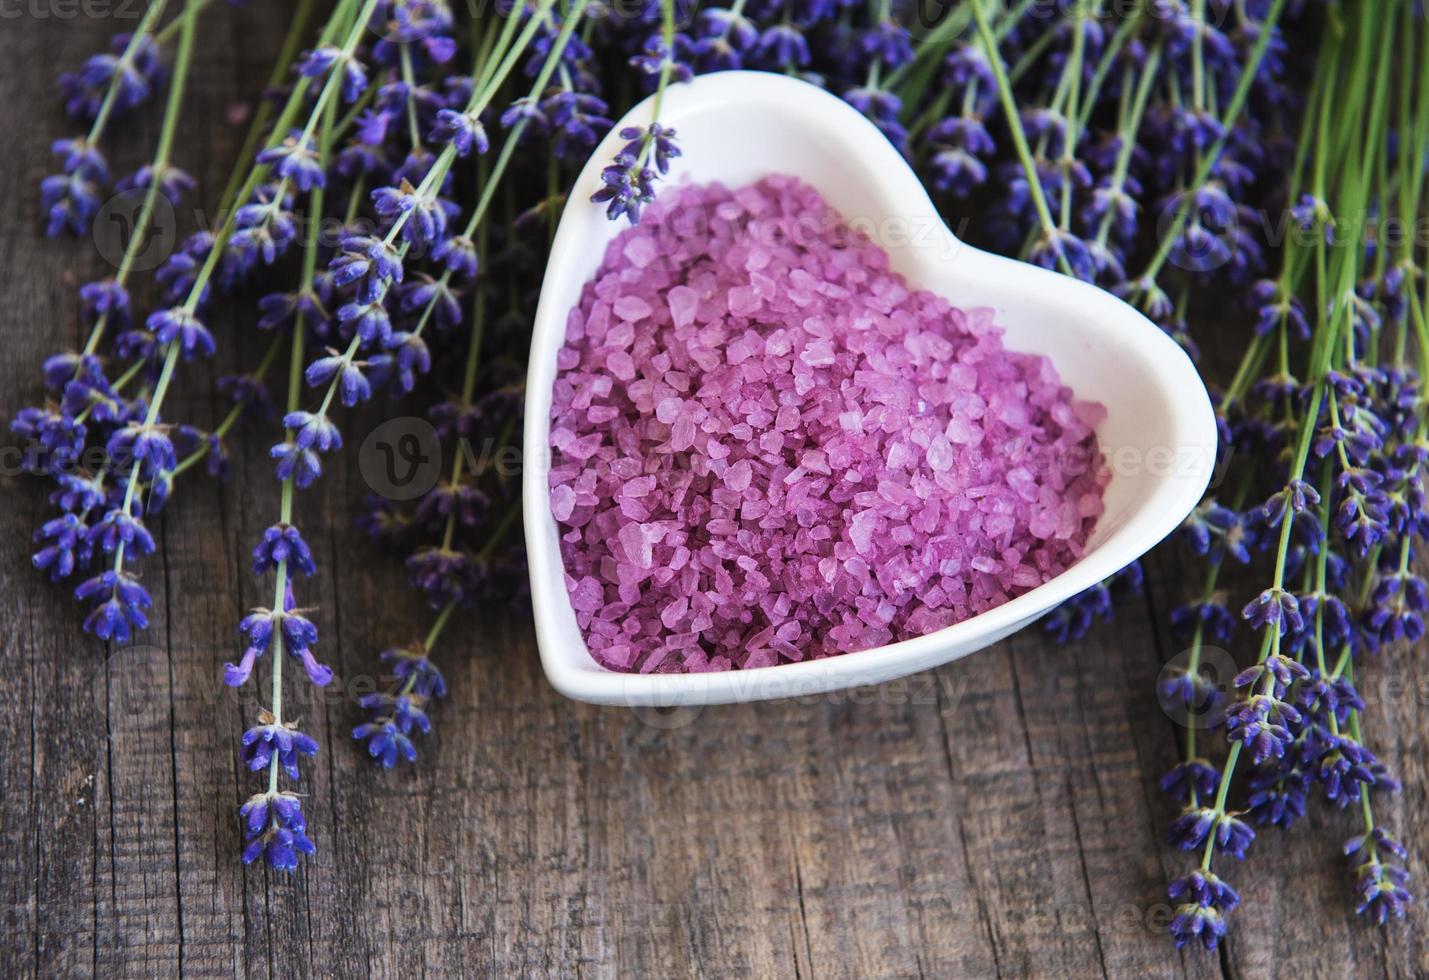 hartvormige kom met zeezout en verse lavendelbloemen foto